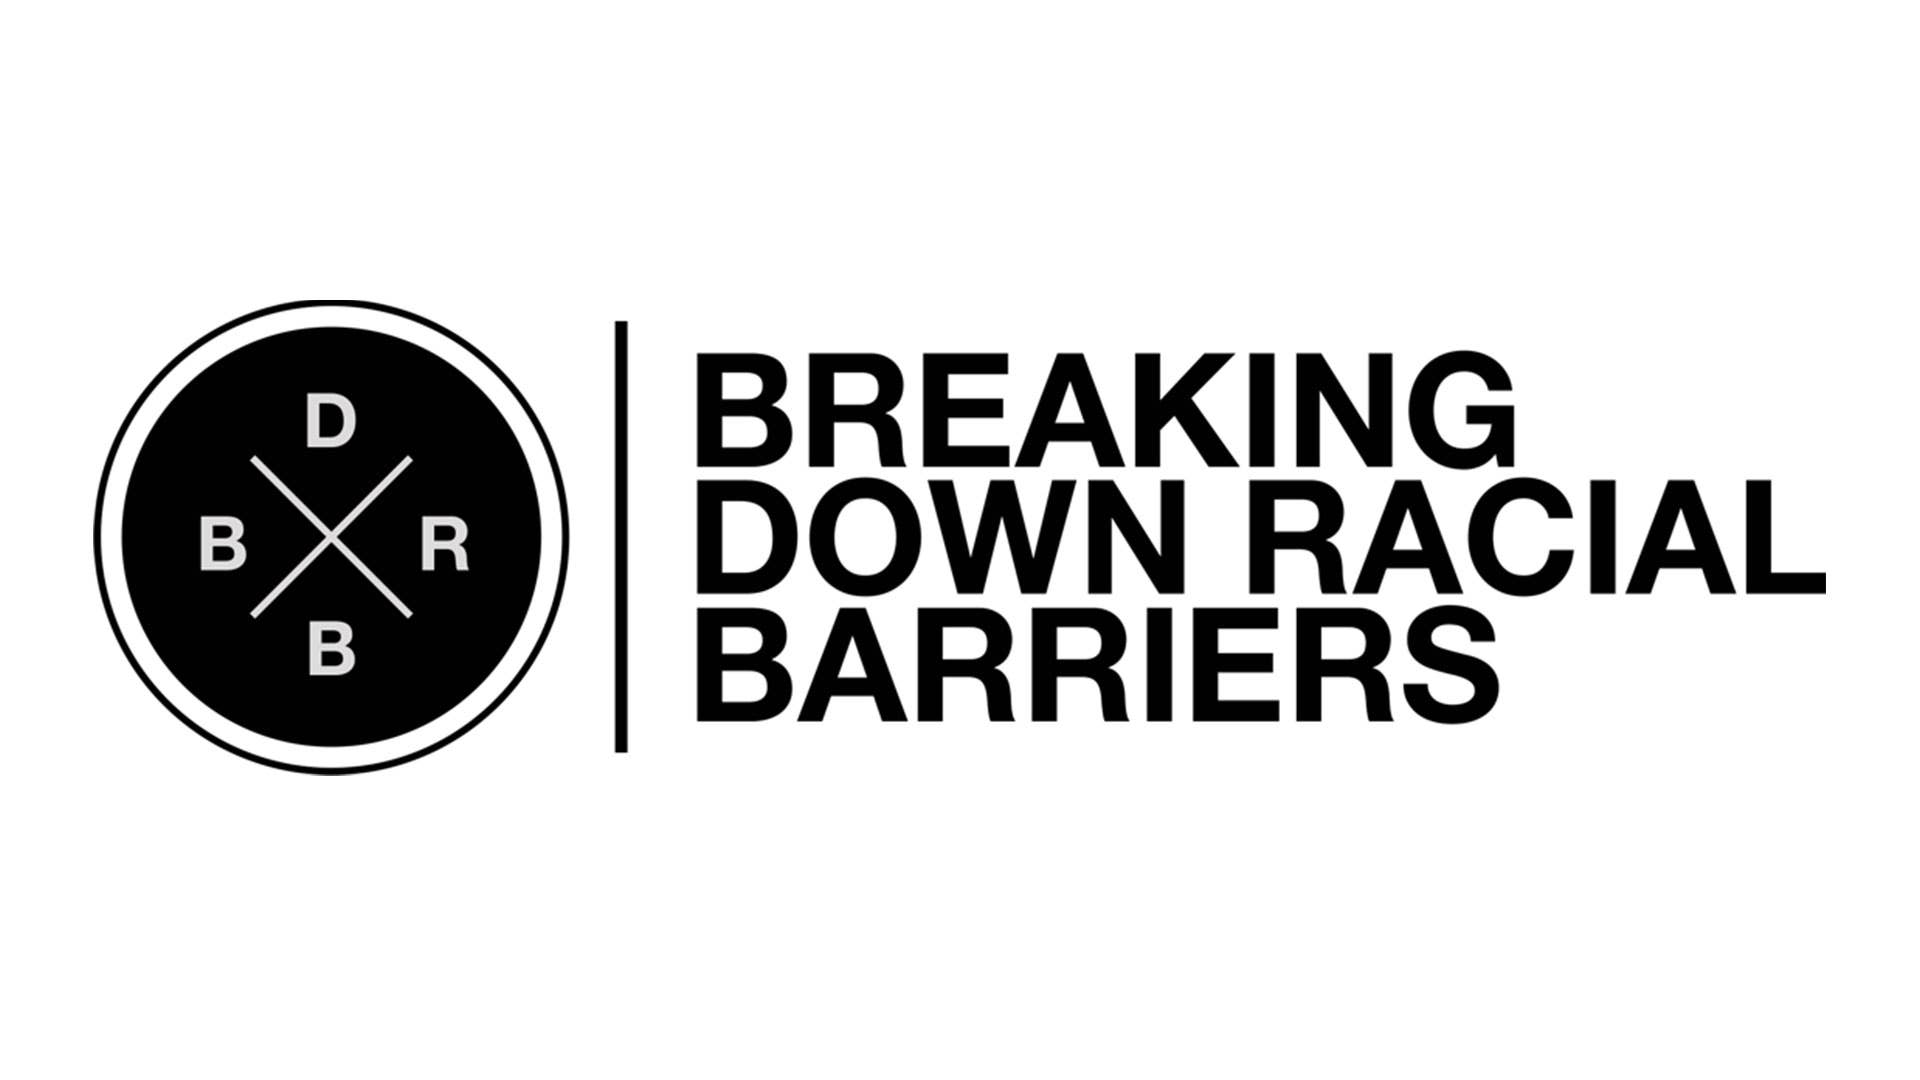 breaking down racial barriers